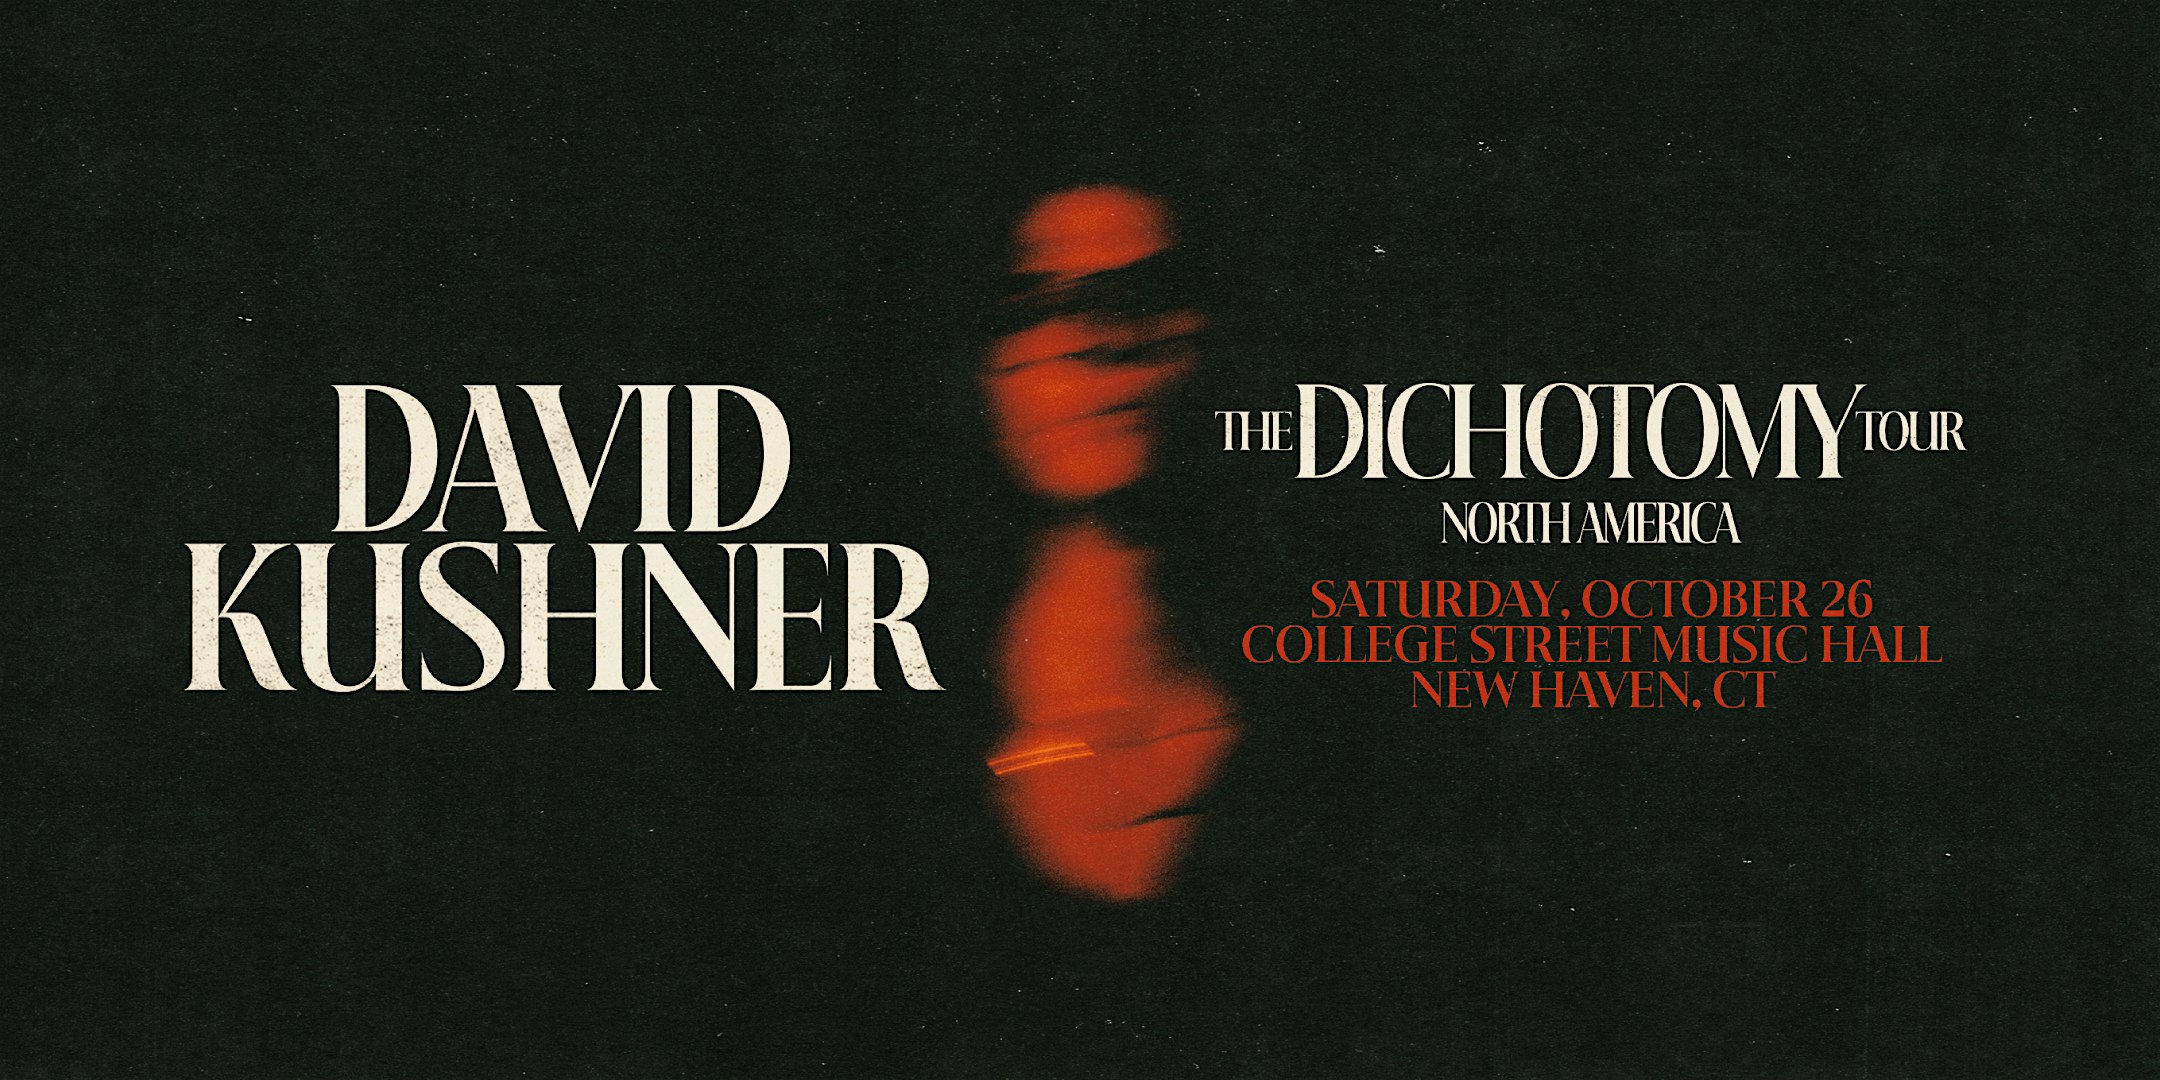 David Kushner - Dichotomy Tour